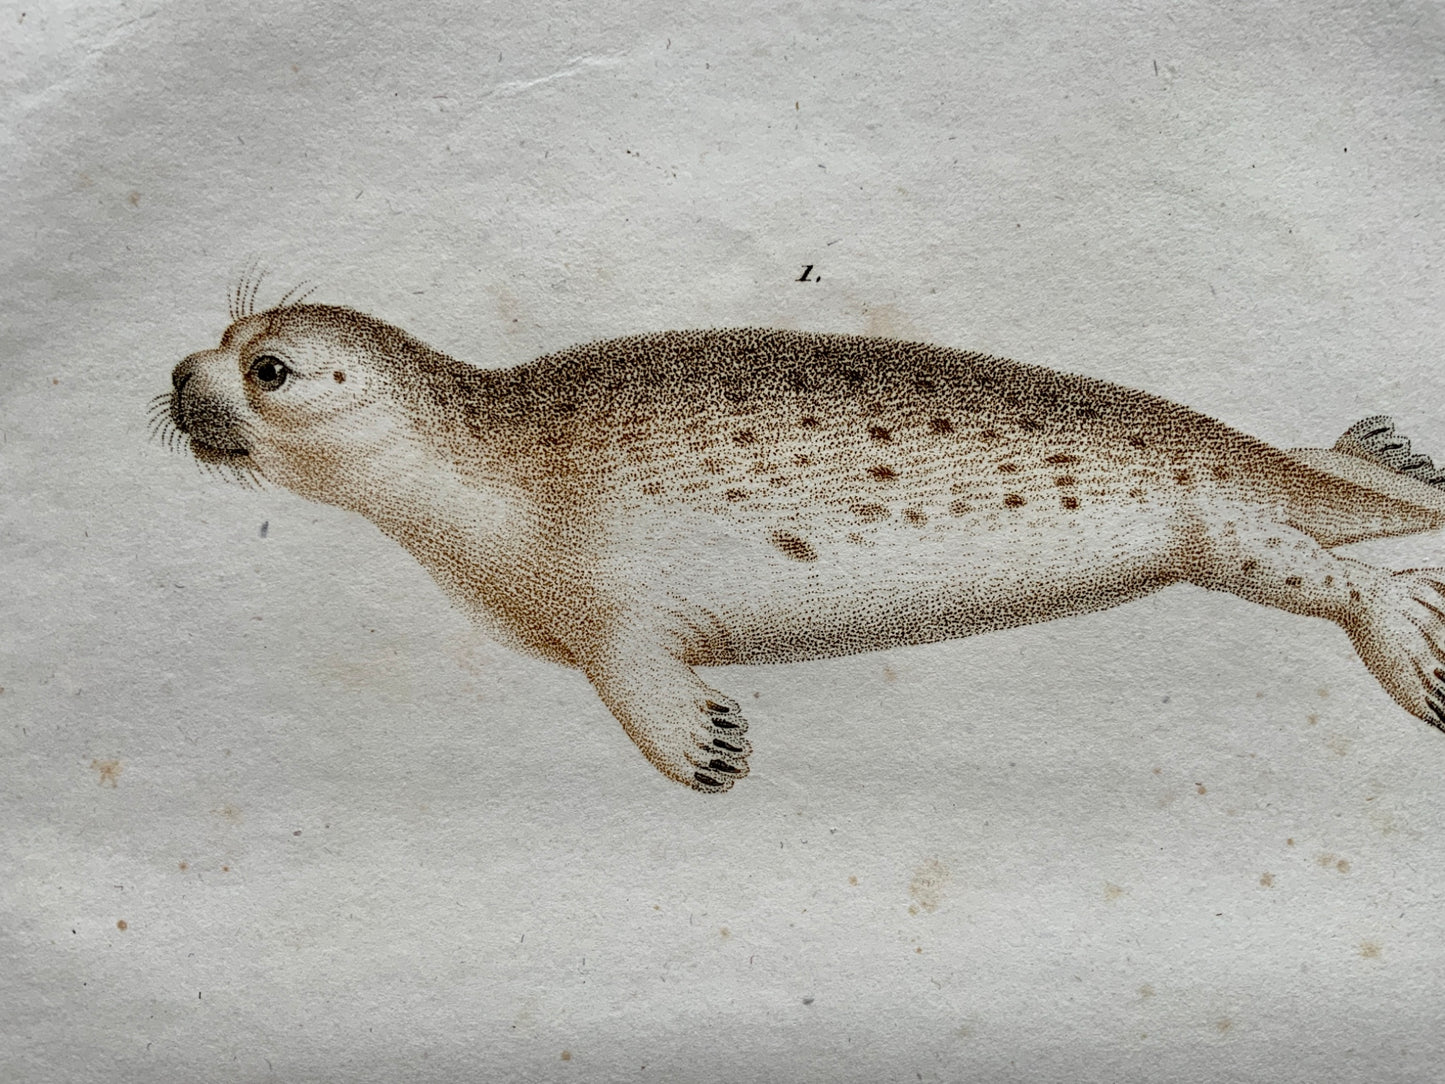 Jean Baptiste Huet [1745-1811] SEALS Coloured stipple (crayon manner) - Mammals